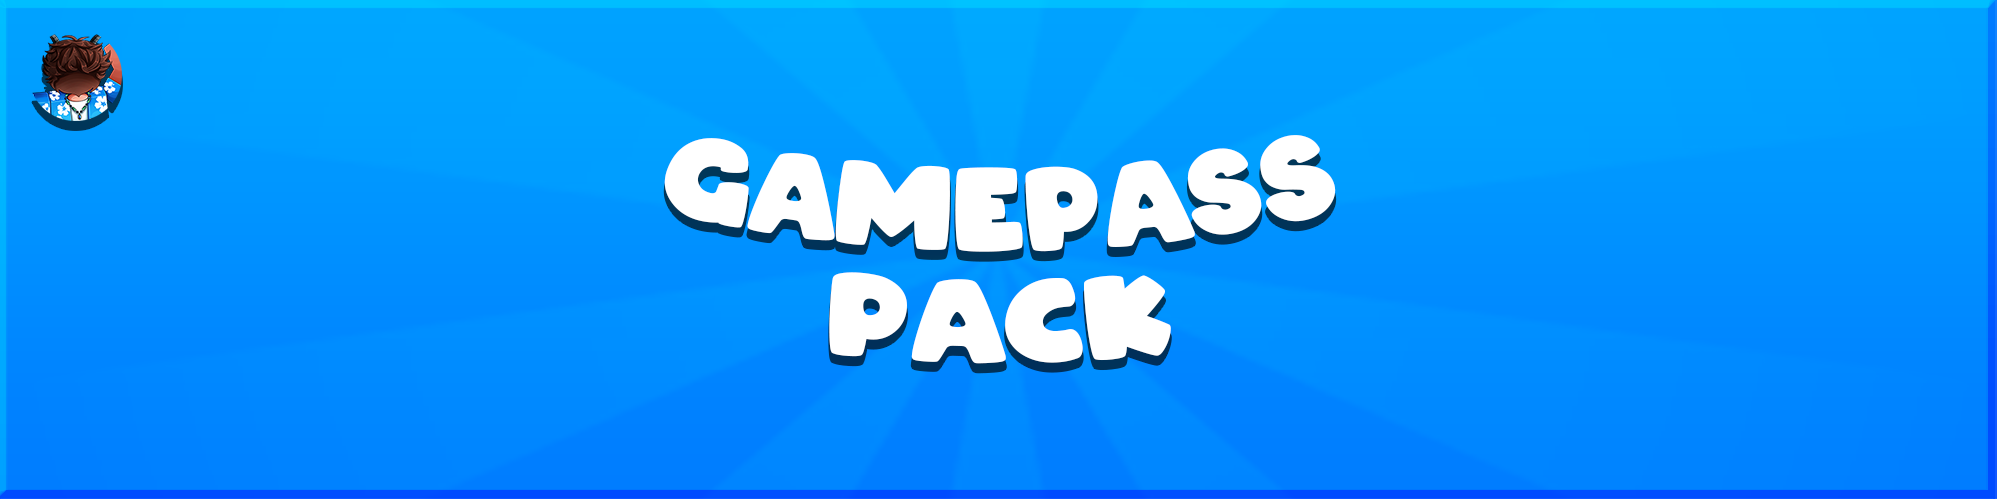 Gamepass Pack